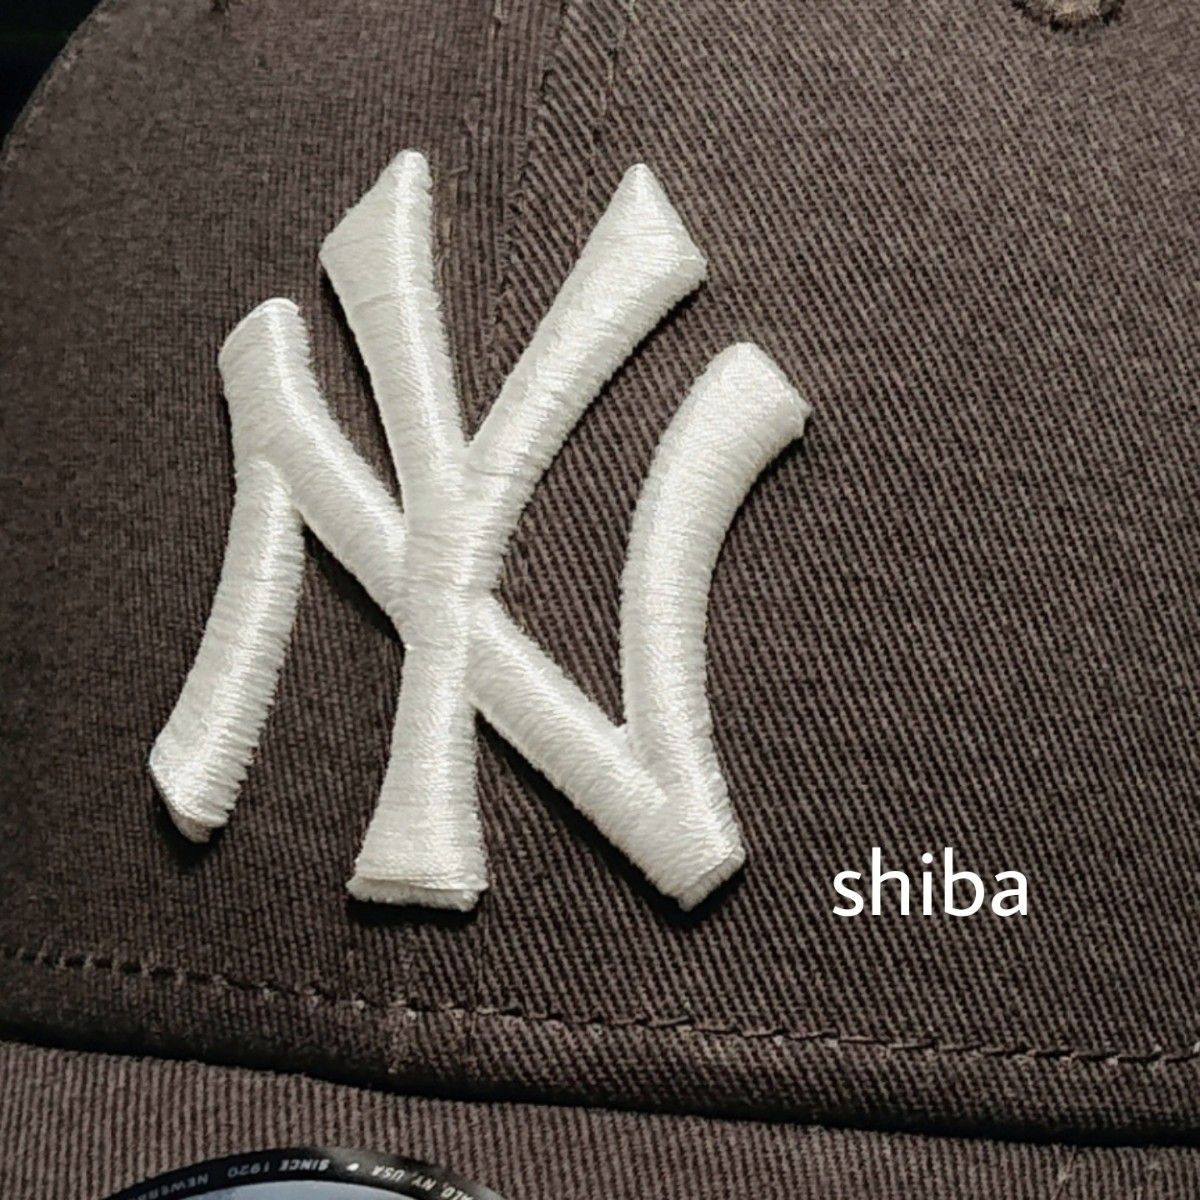 NEW ERA ニューエラ 正規品 キャップ 帽子 ブラウン 茶色 アイボリー 白 ヤンキース NY ユニセックス 男女兼用